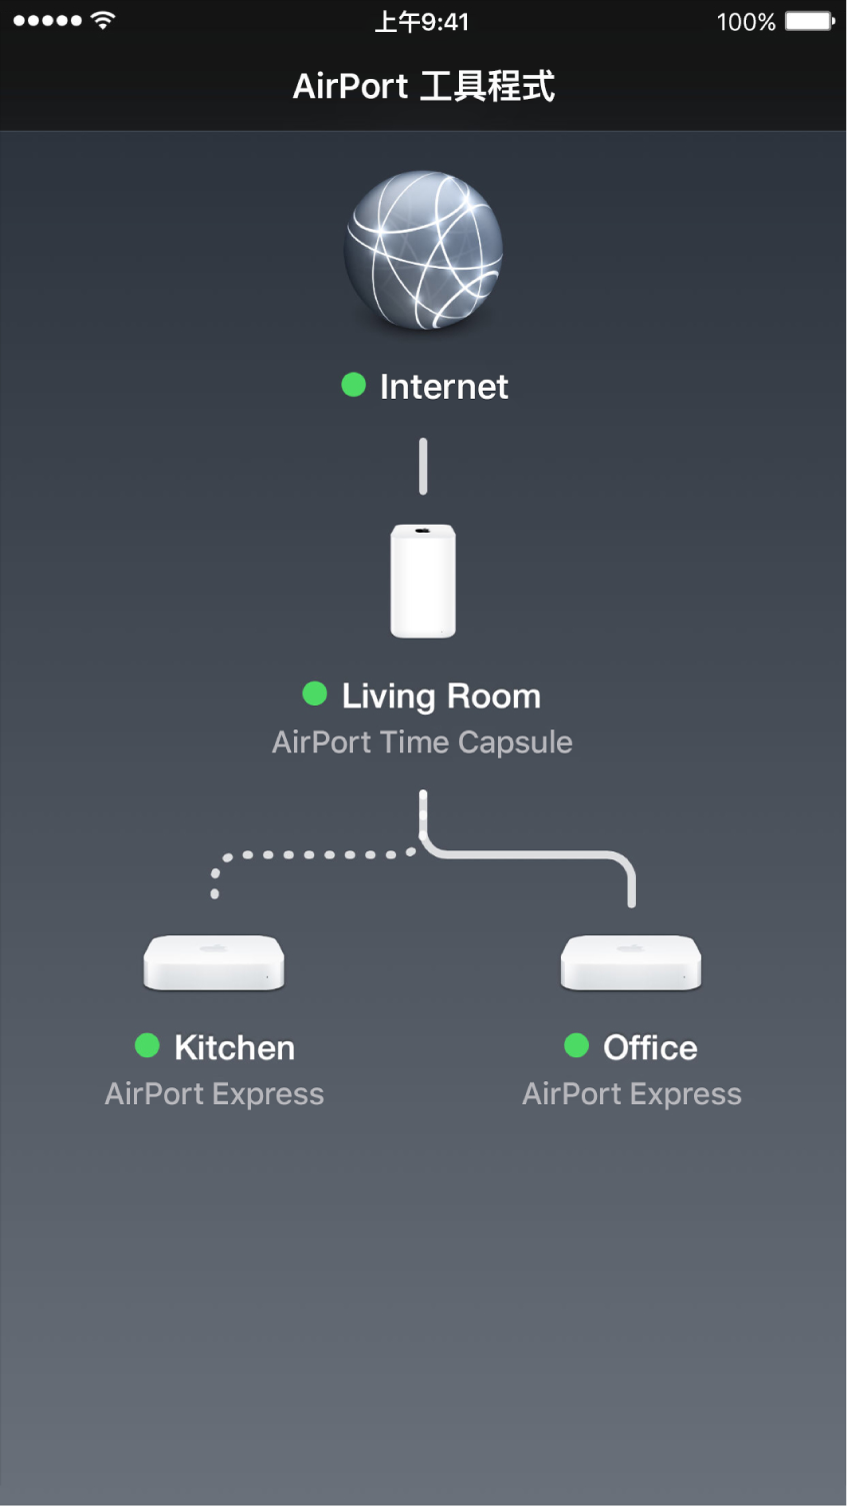 「iOS 版 AirPort 工具程式」的圖形概覽。